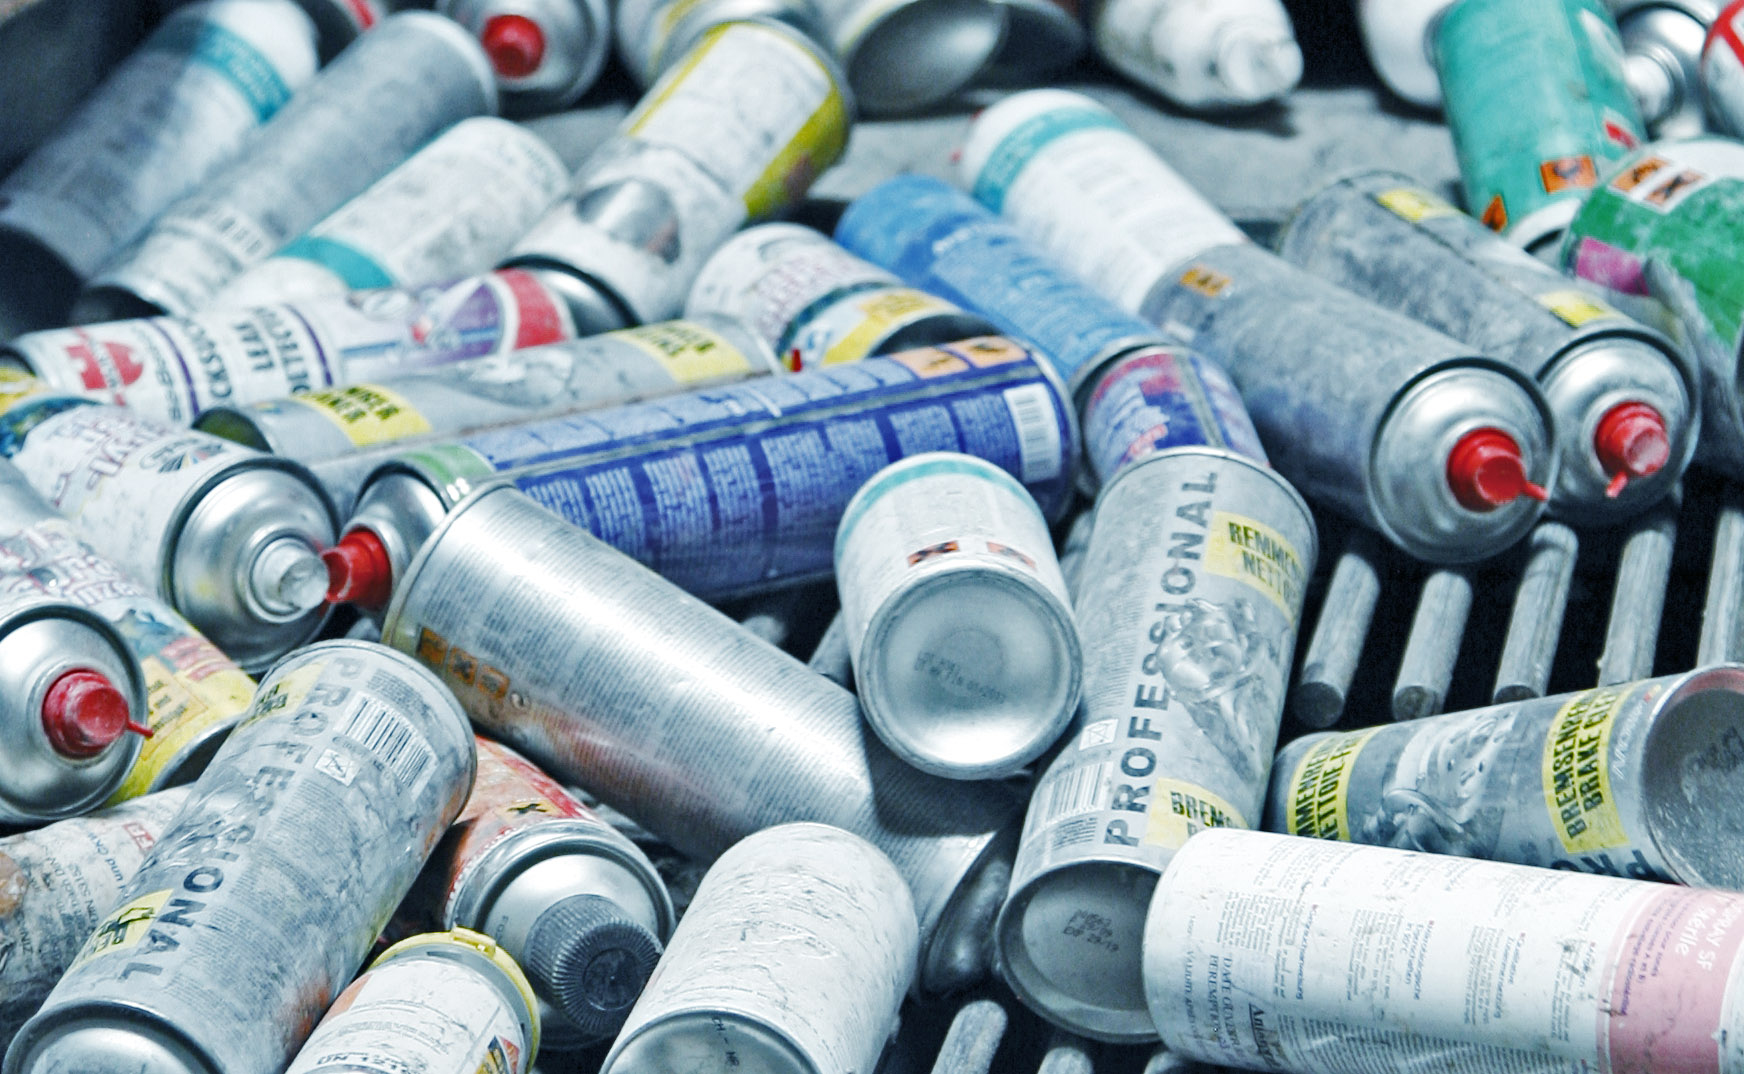 recycling-input-metals-aerosol-cans